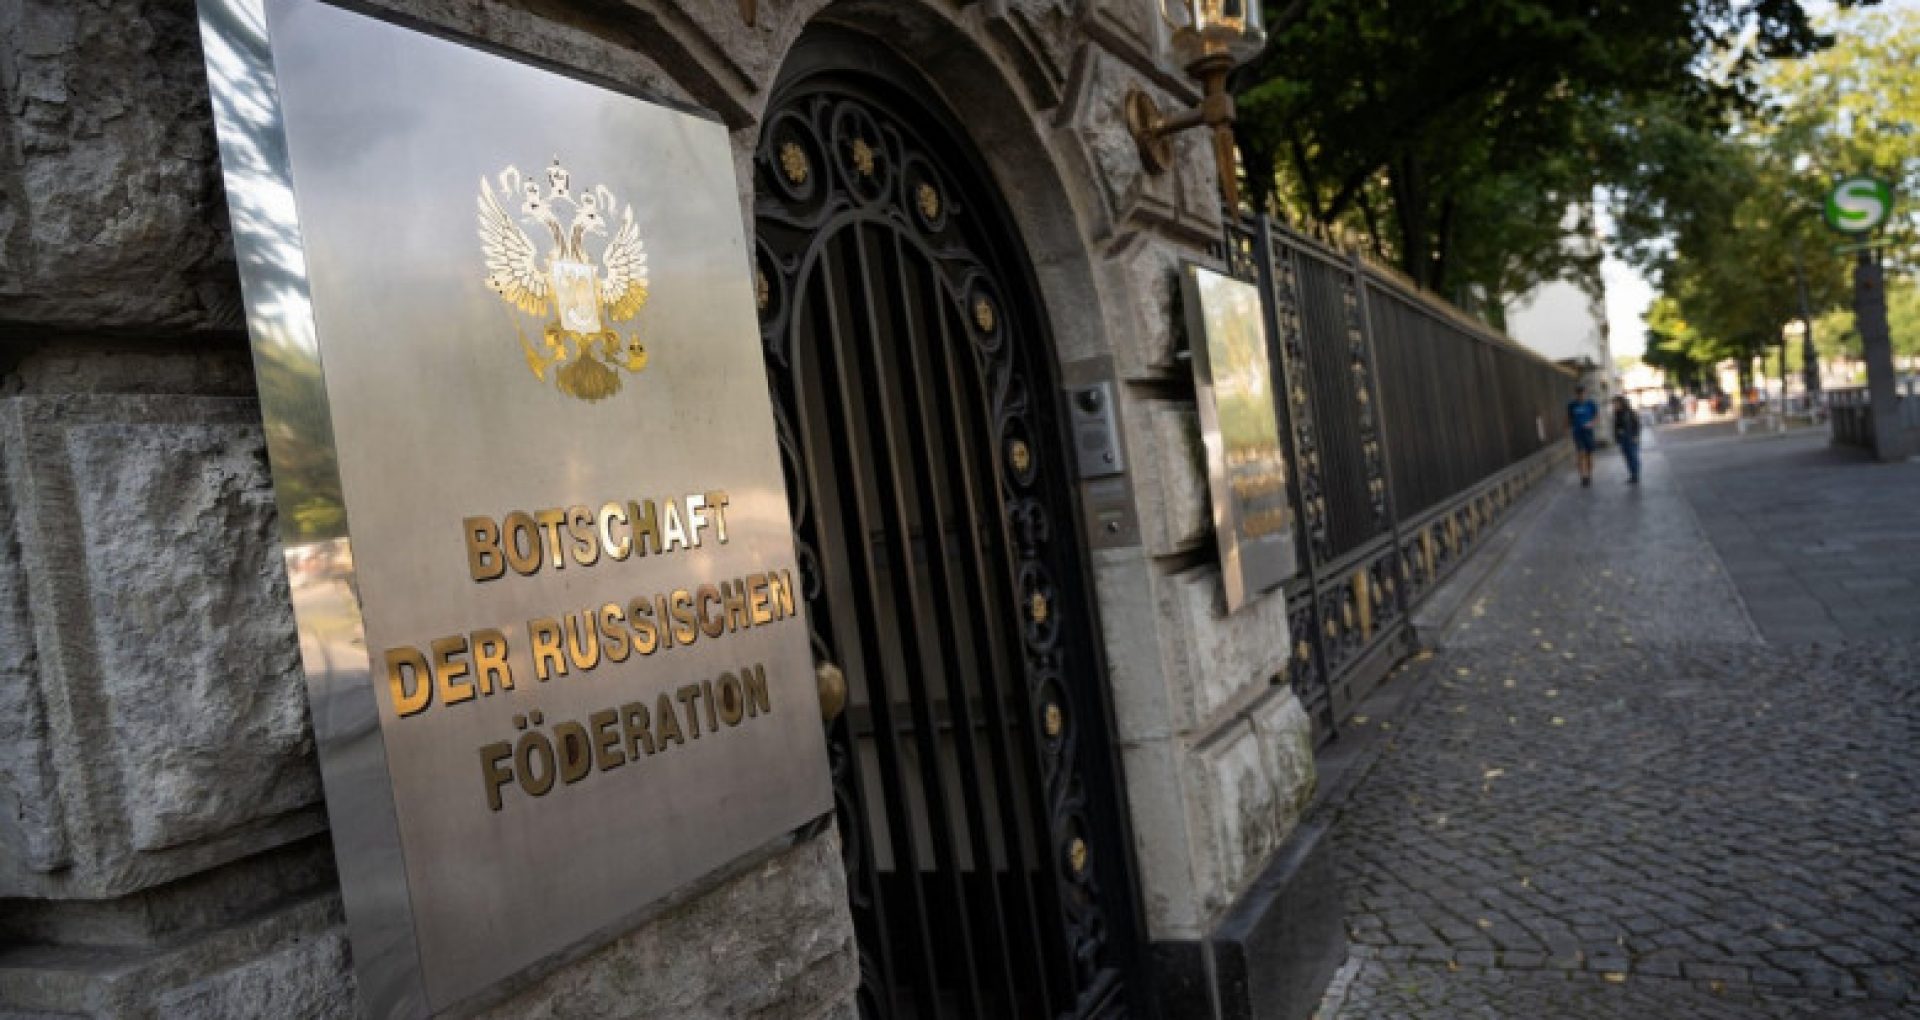 Un diplomat rus, despre care se crede că avea legături cu agenția de spionaj FSB a Kremlinului, găsit mort în fața ambasadei din Berlin